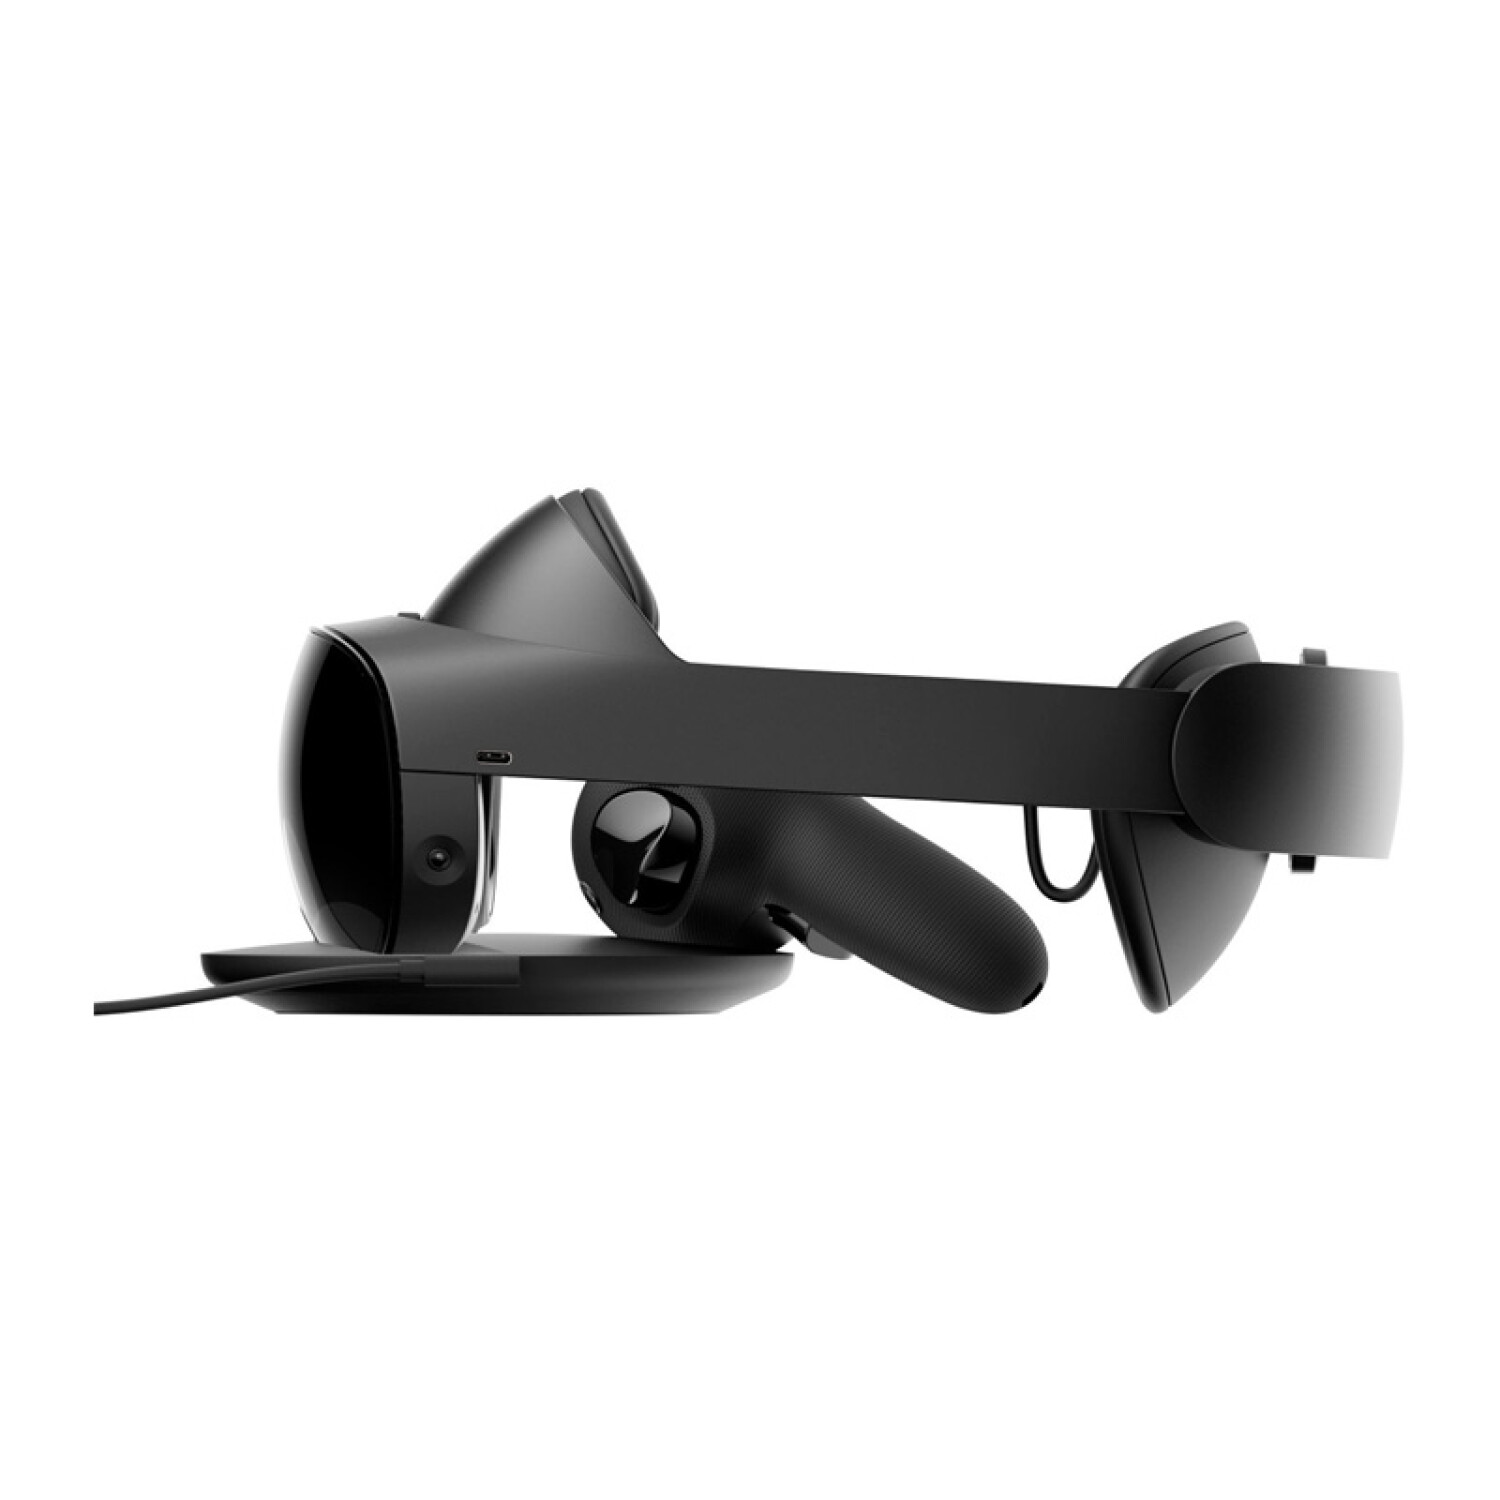 Meta Quest 3: precio y características de las gafas de realidad virtual